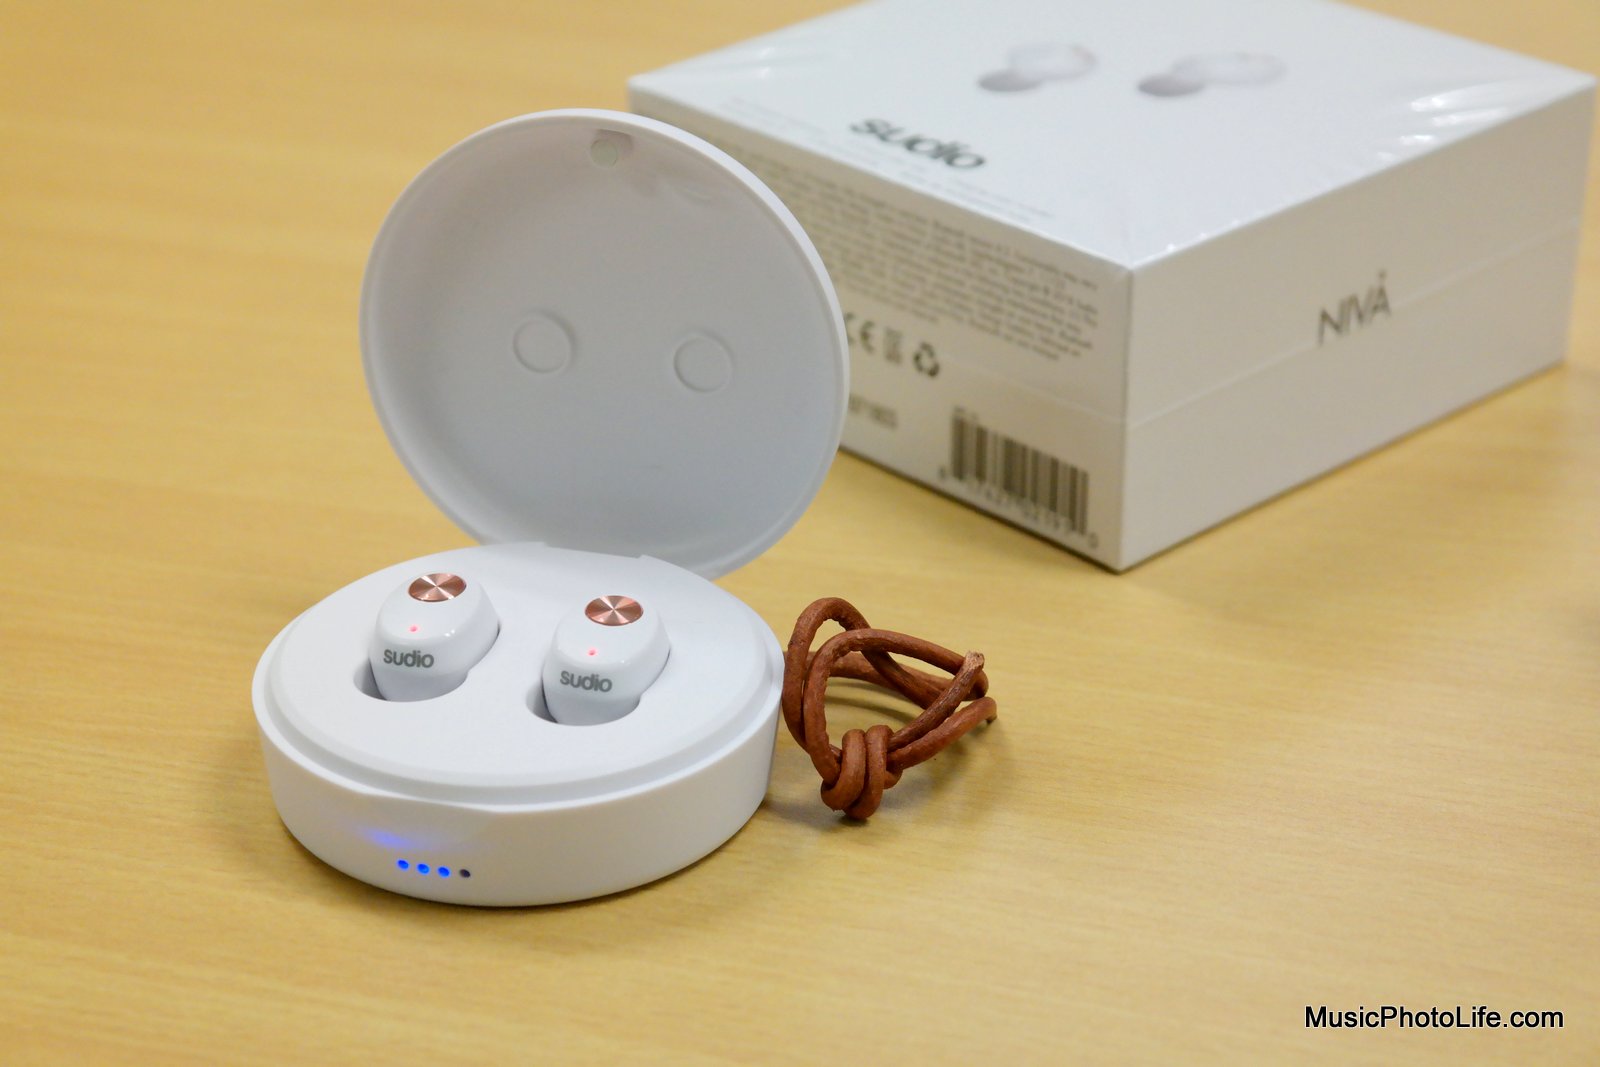 Sudio Niva Review: True Wireless 